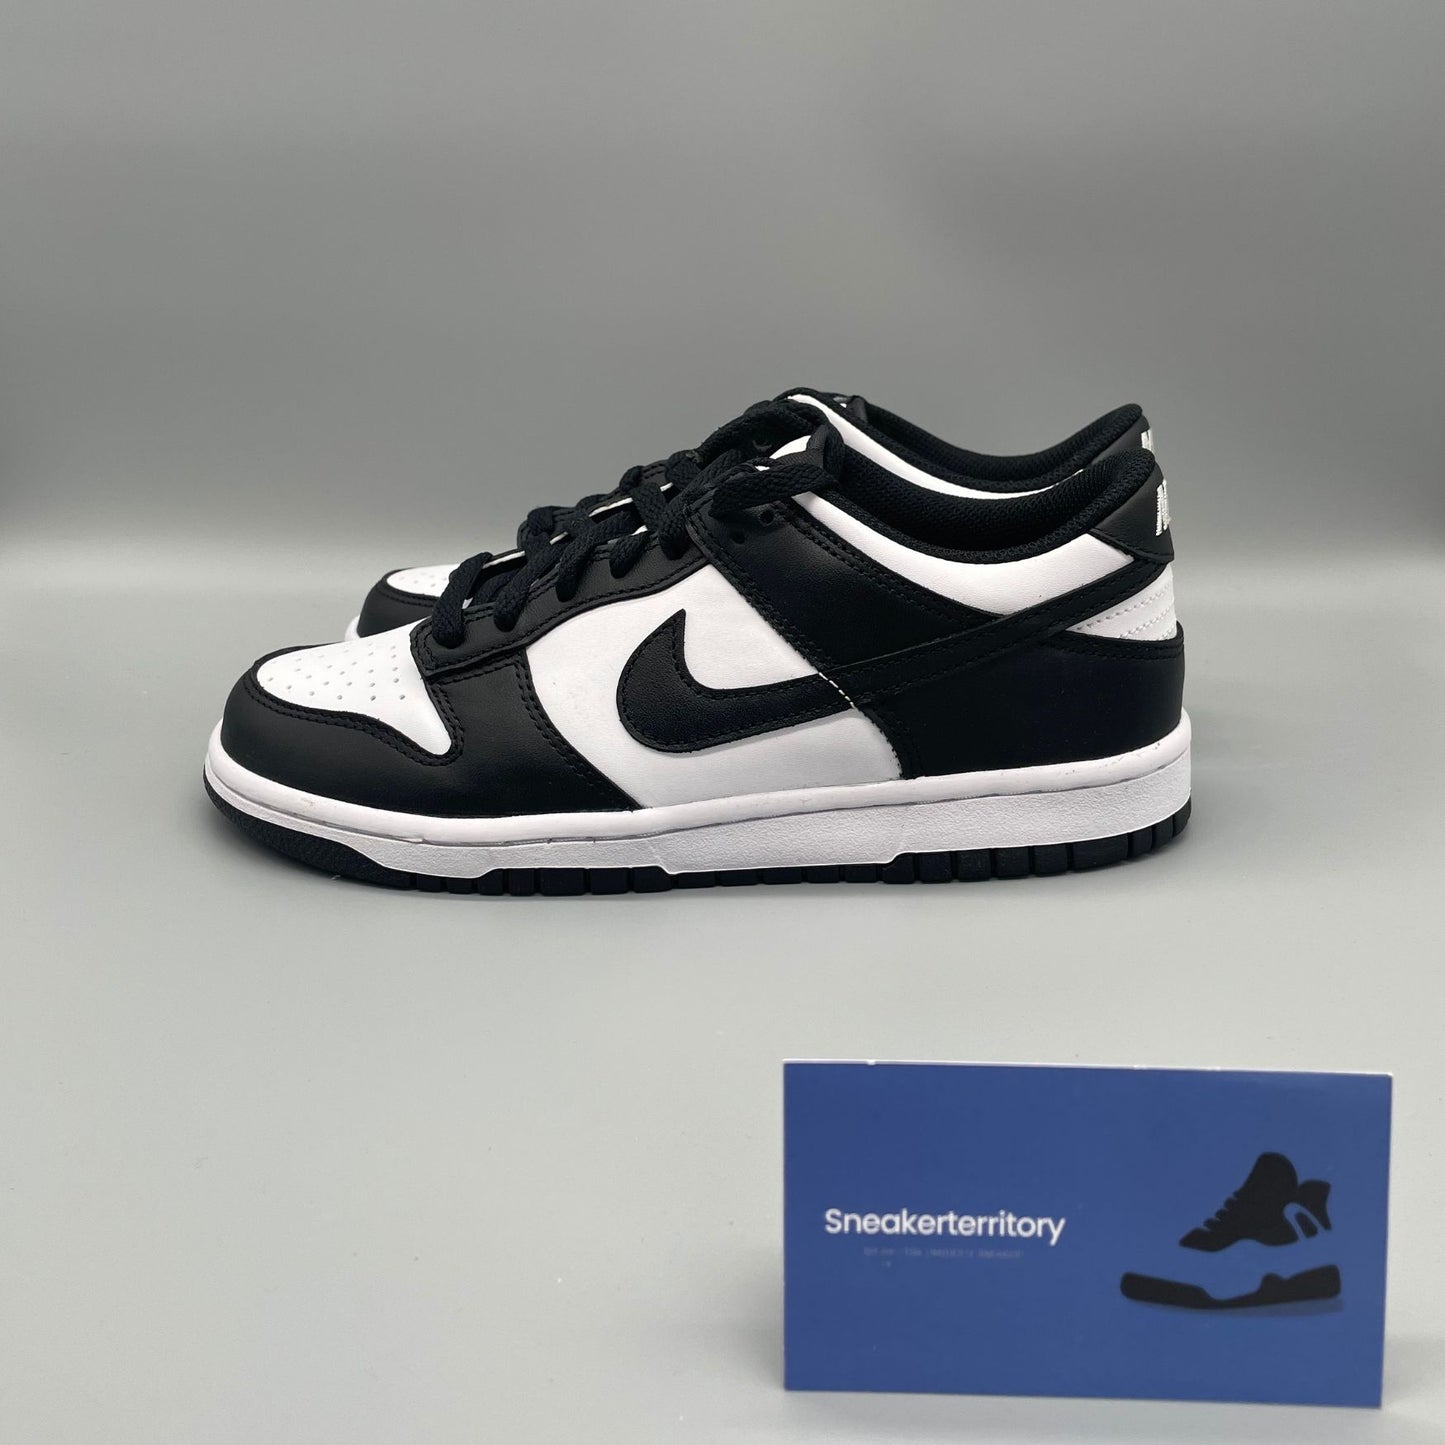 Nike Dunk Low Panda (GS) - Sneakerterritory; Sneaker Territory 2